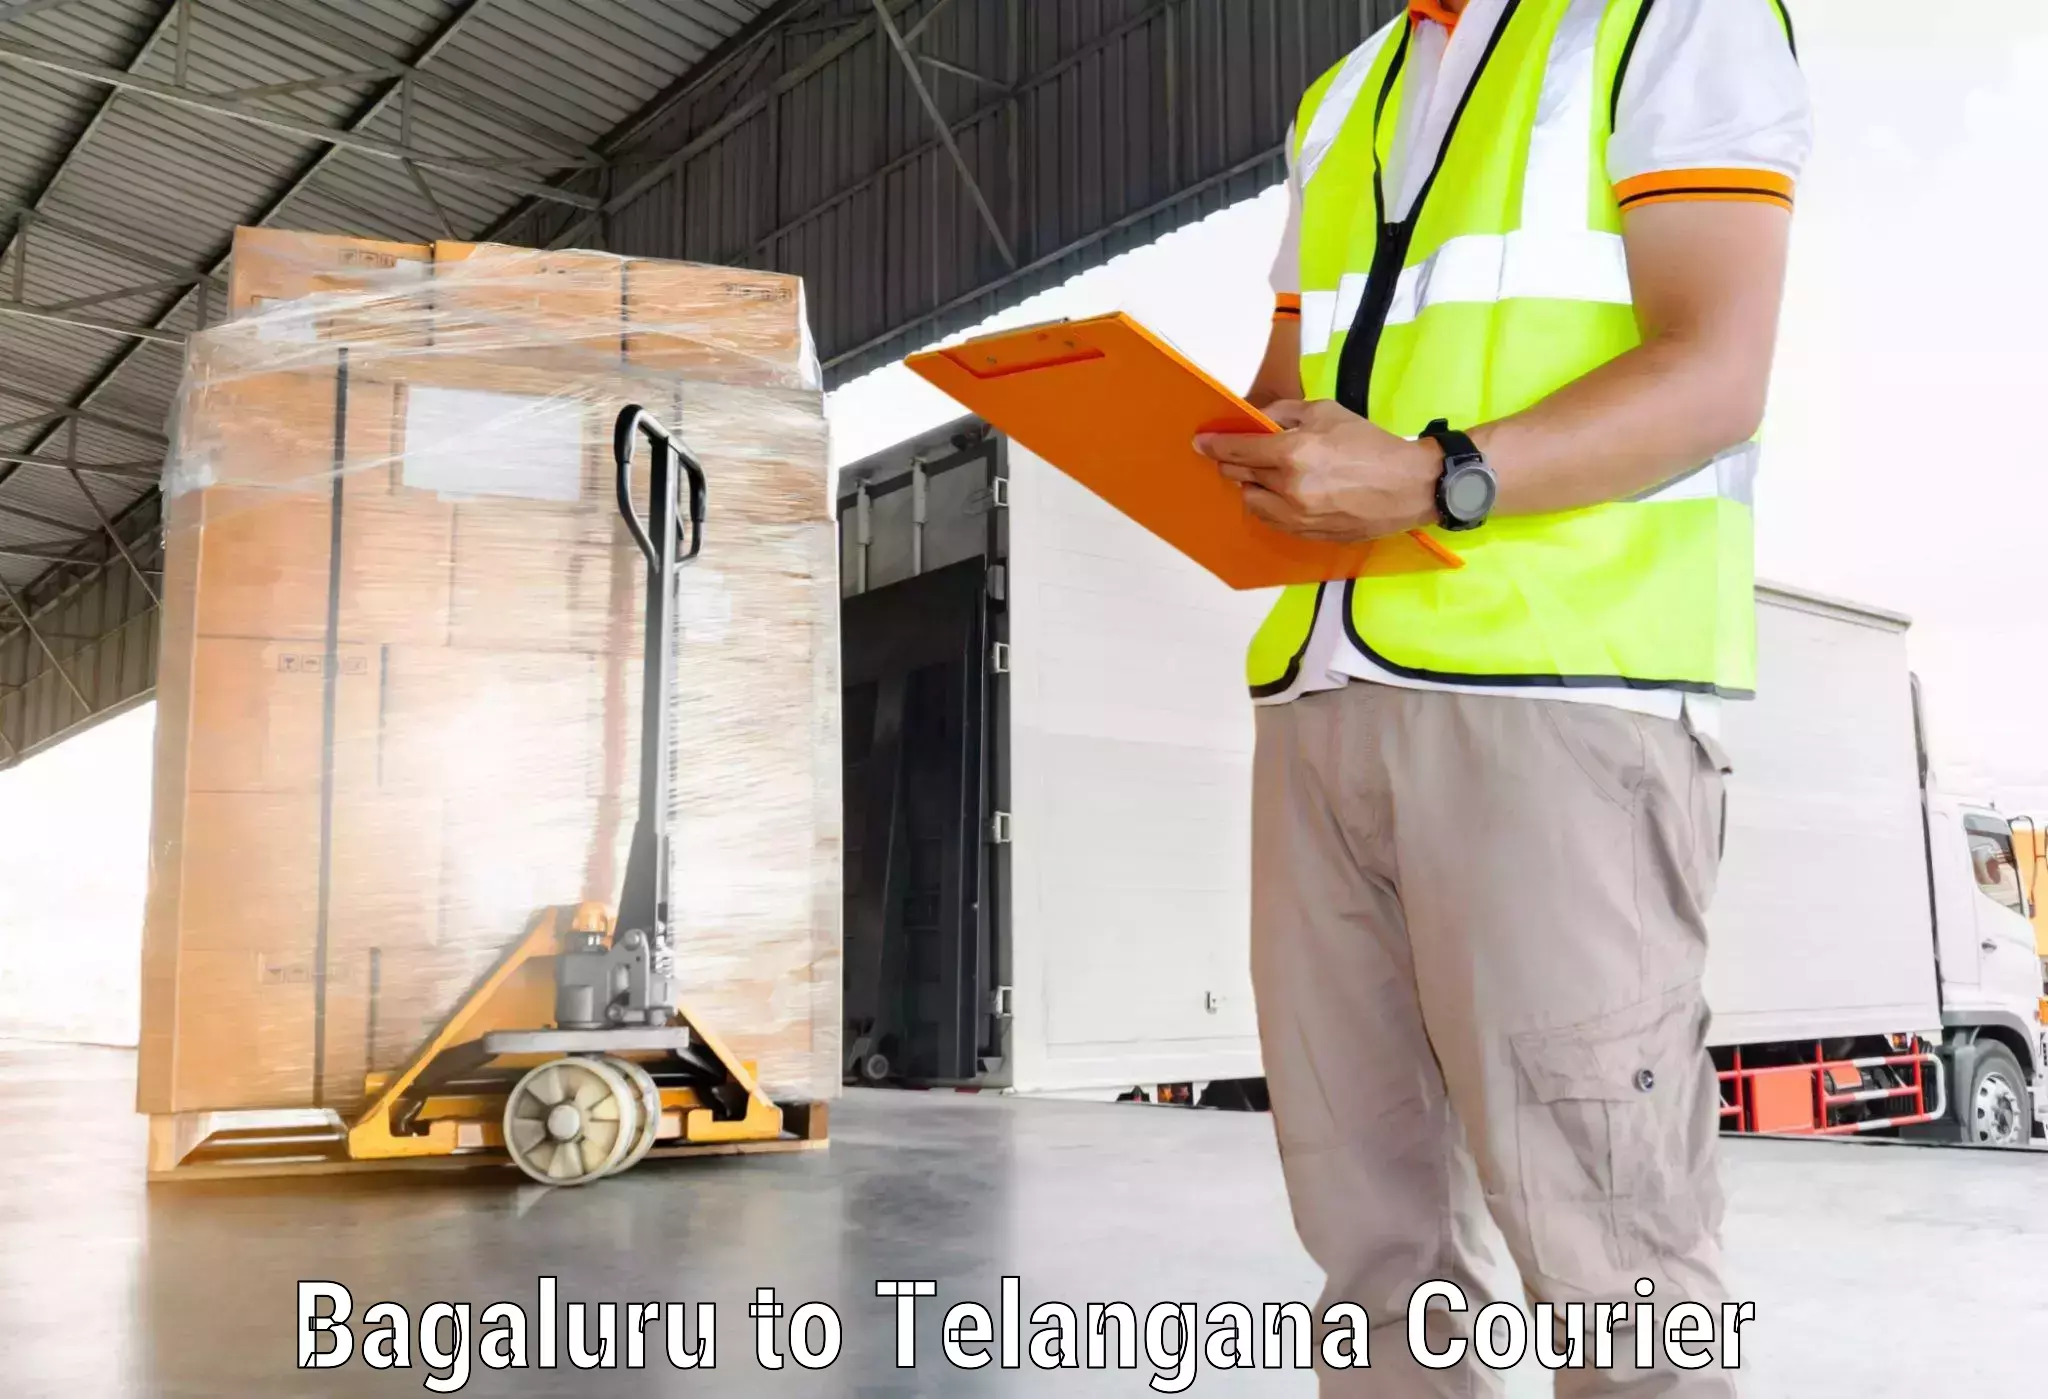 Global logistics network in Bagaluru to Rudrangi